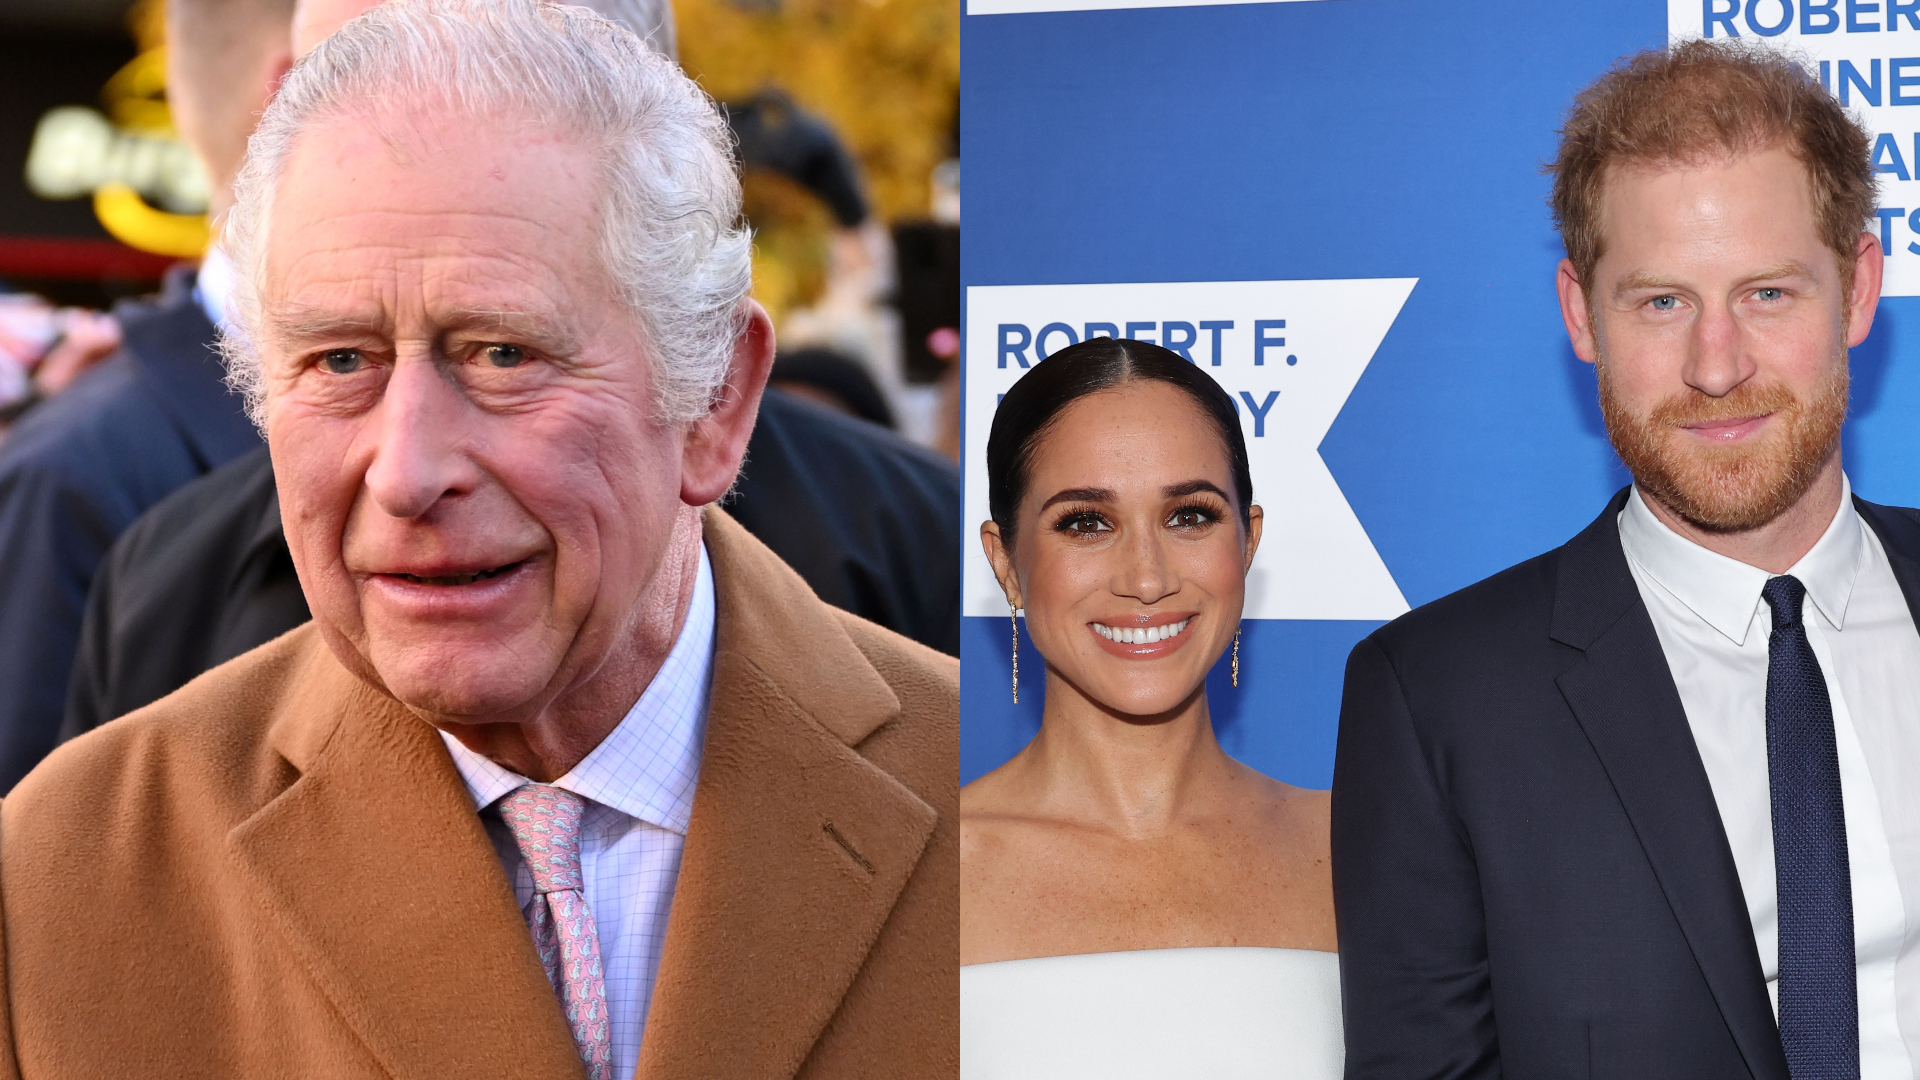 Rei Charles pagará por segurança de príncipe Andrew, acusado de abuso sexual, apesar de negar benefício para Harry e Meghan, diz jornal